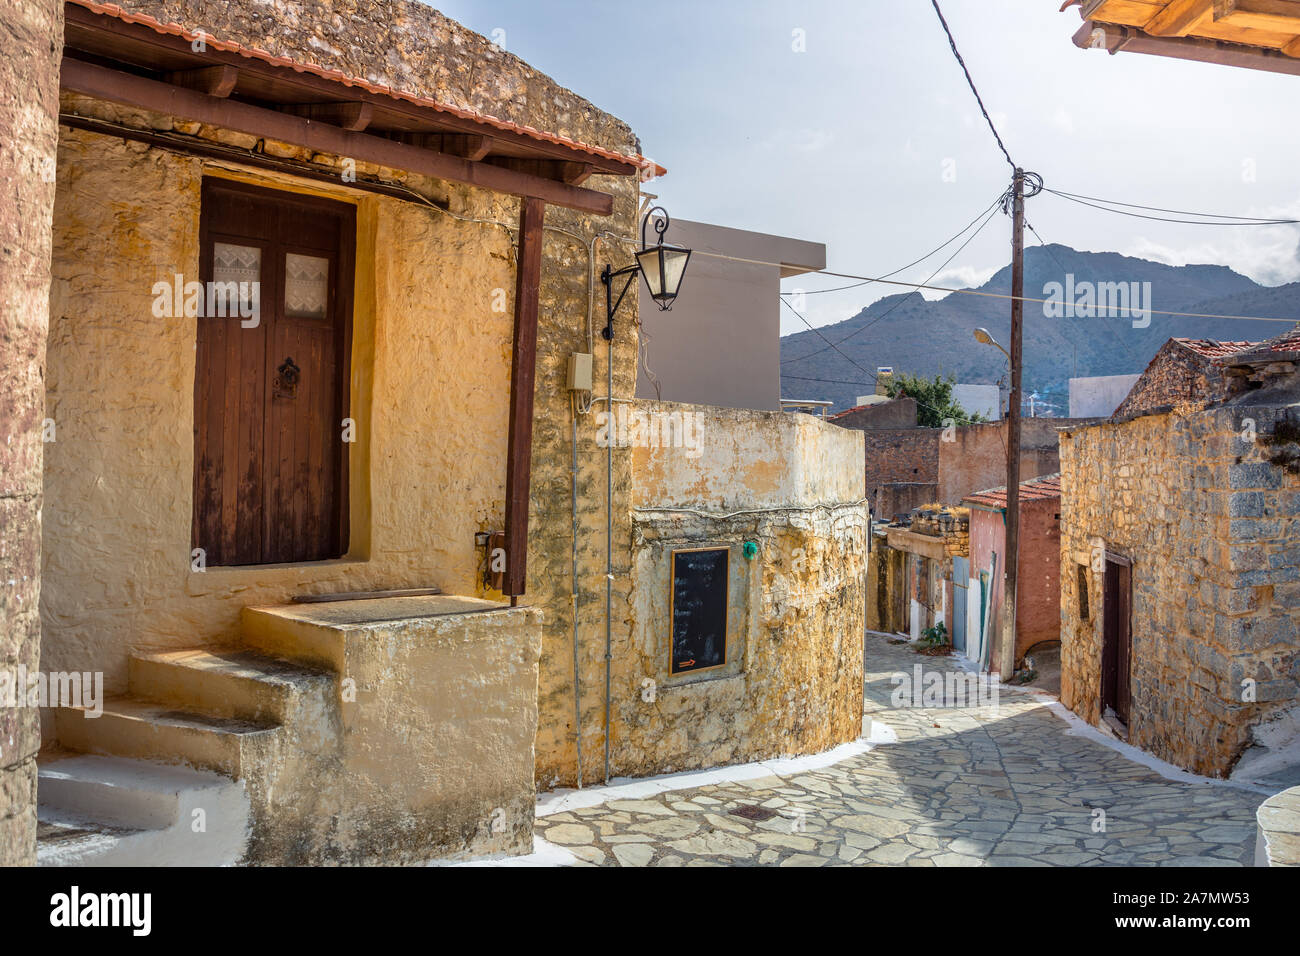 Calle angosta con coloridas casas de piedra en el antiguo pueblo de Pano Elounda, Creta, Grecia. Foto de stock